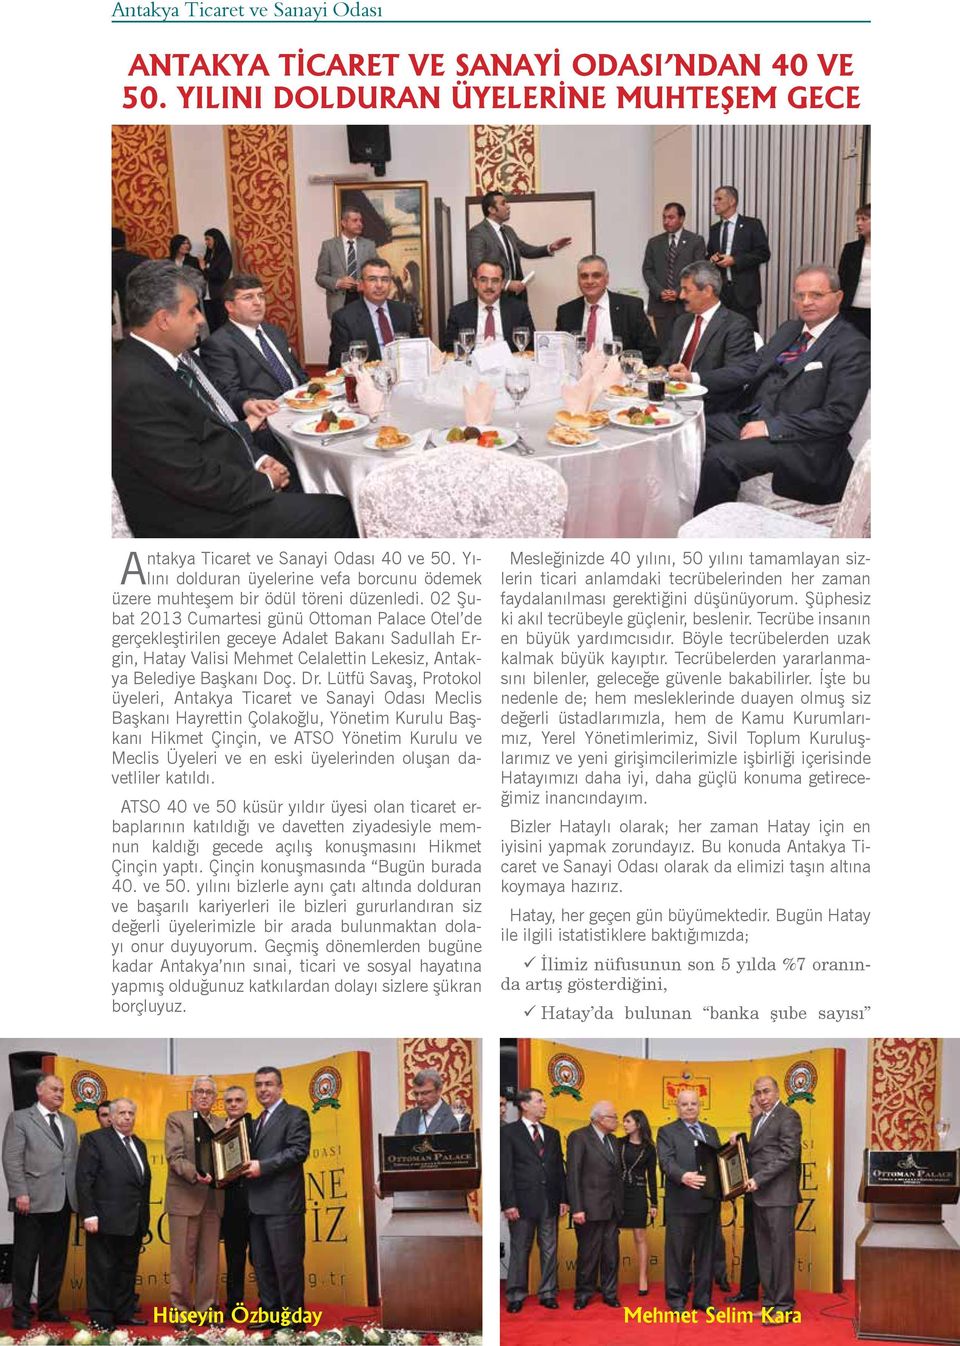 02 Şubat 2013 Cumartesi günü Ottoman Palace Otel de gerçekleştirilen geceye Adalet Bakanı Sadullah Ergin, Hatay Valisi Mehmet Celalettin Lekesiz, Antakya Belediye Başkanı Doç. Dr.